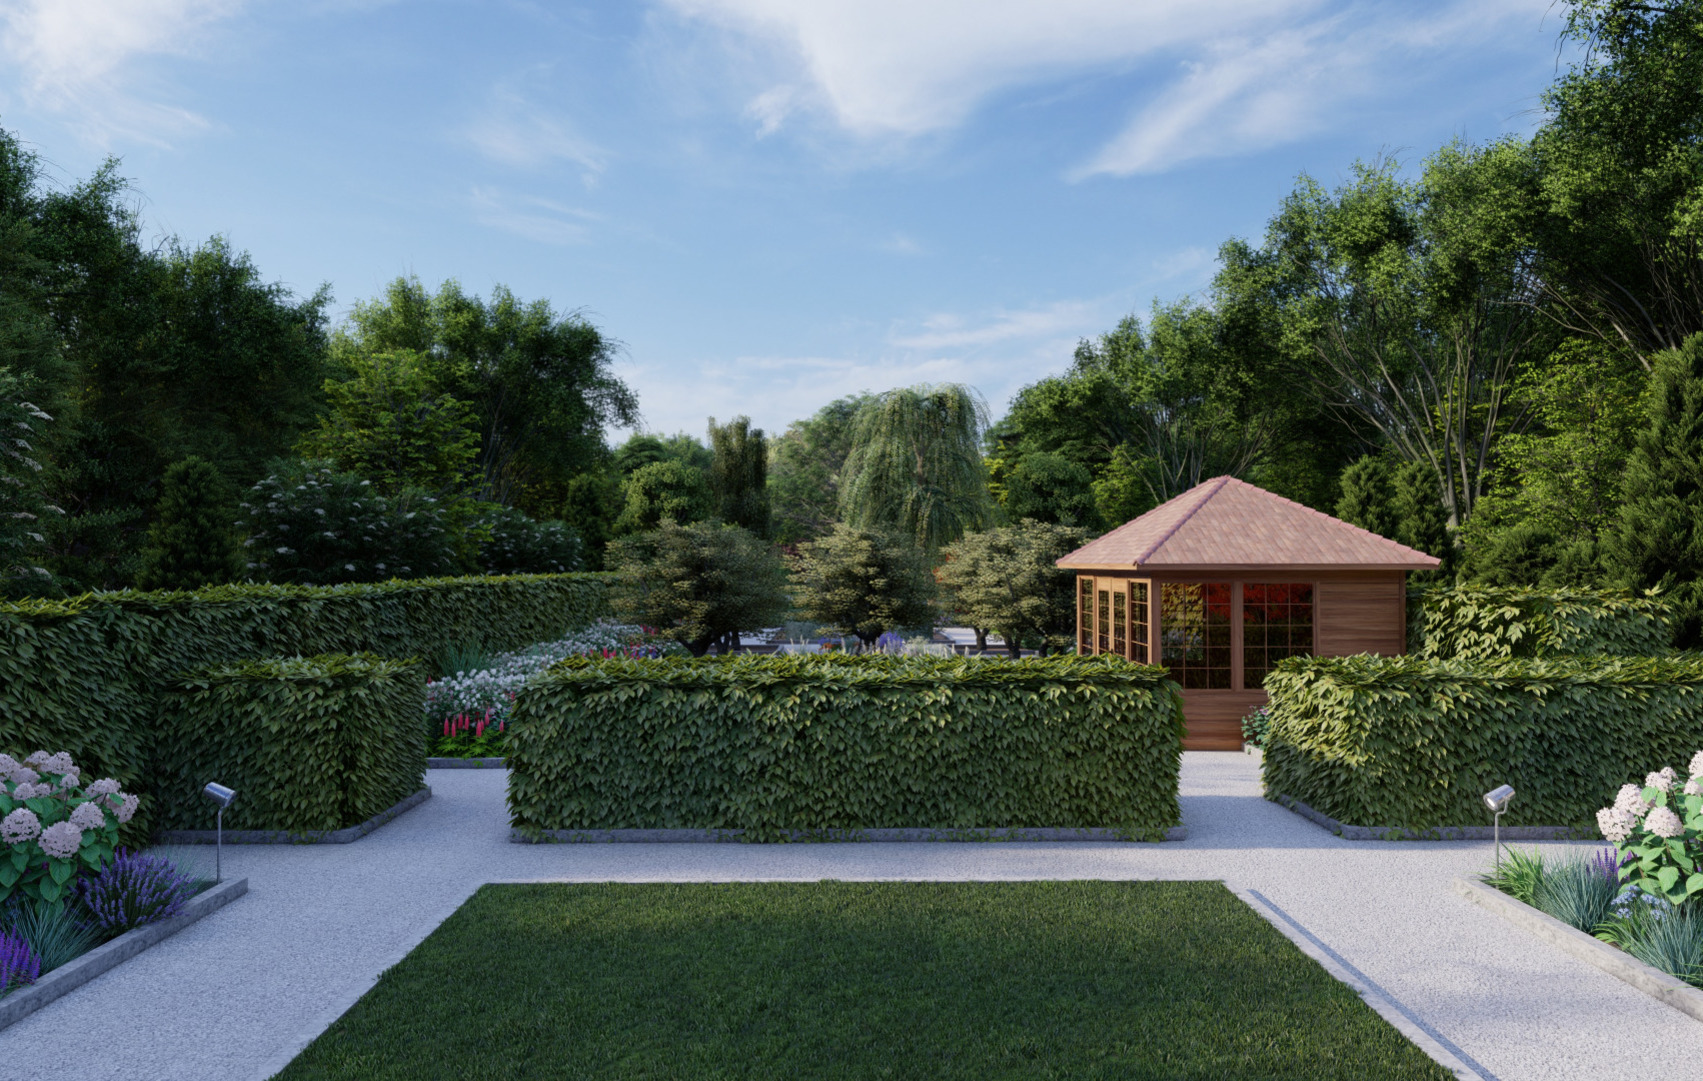 Garden Design Greystones | Owen Chubb Garden Landscapers, Tel 087-2306 128